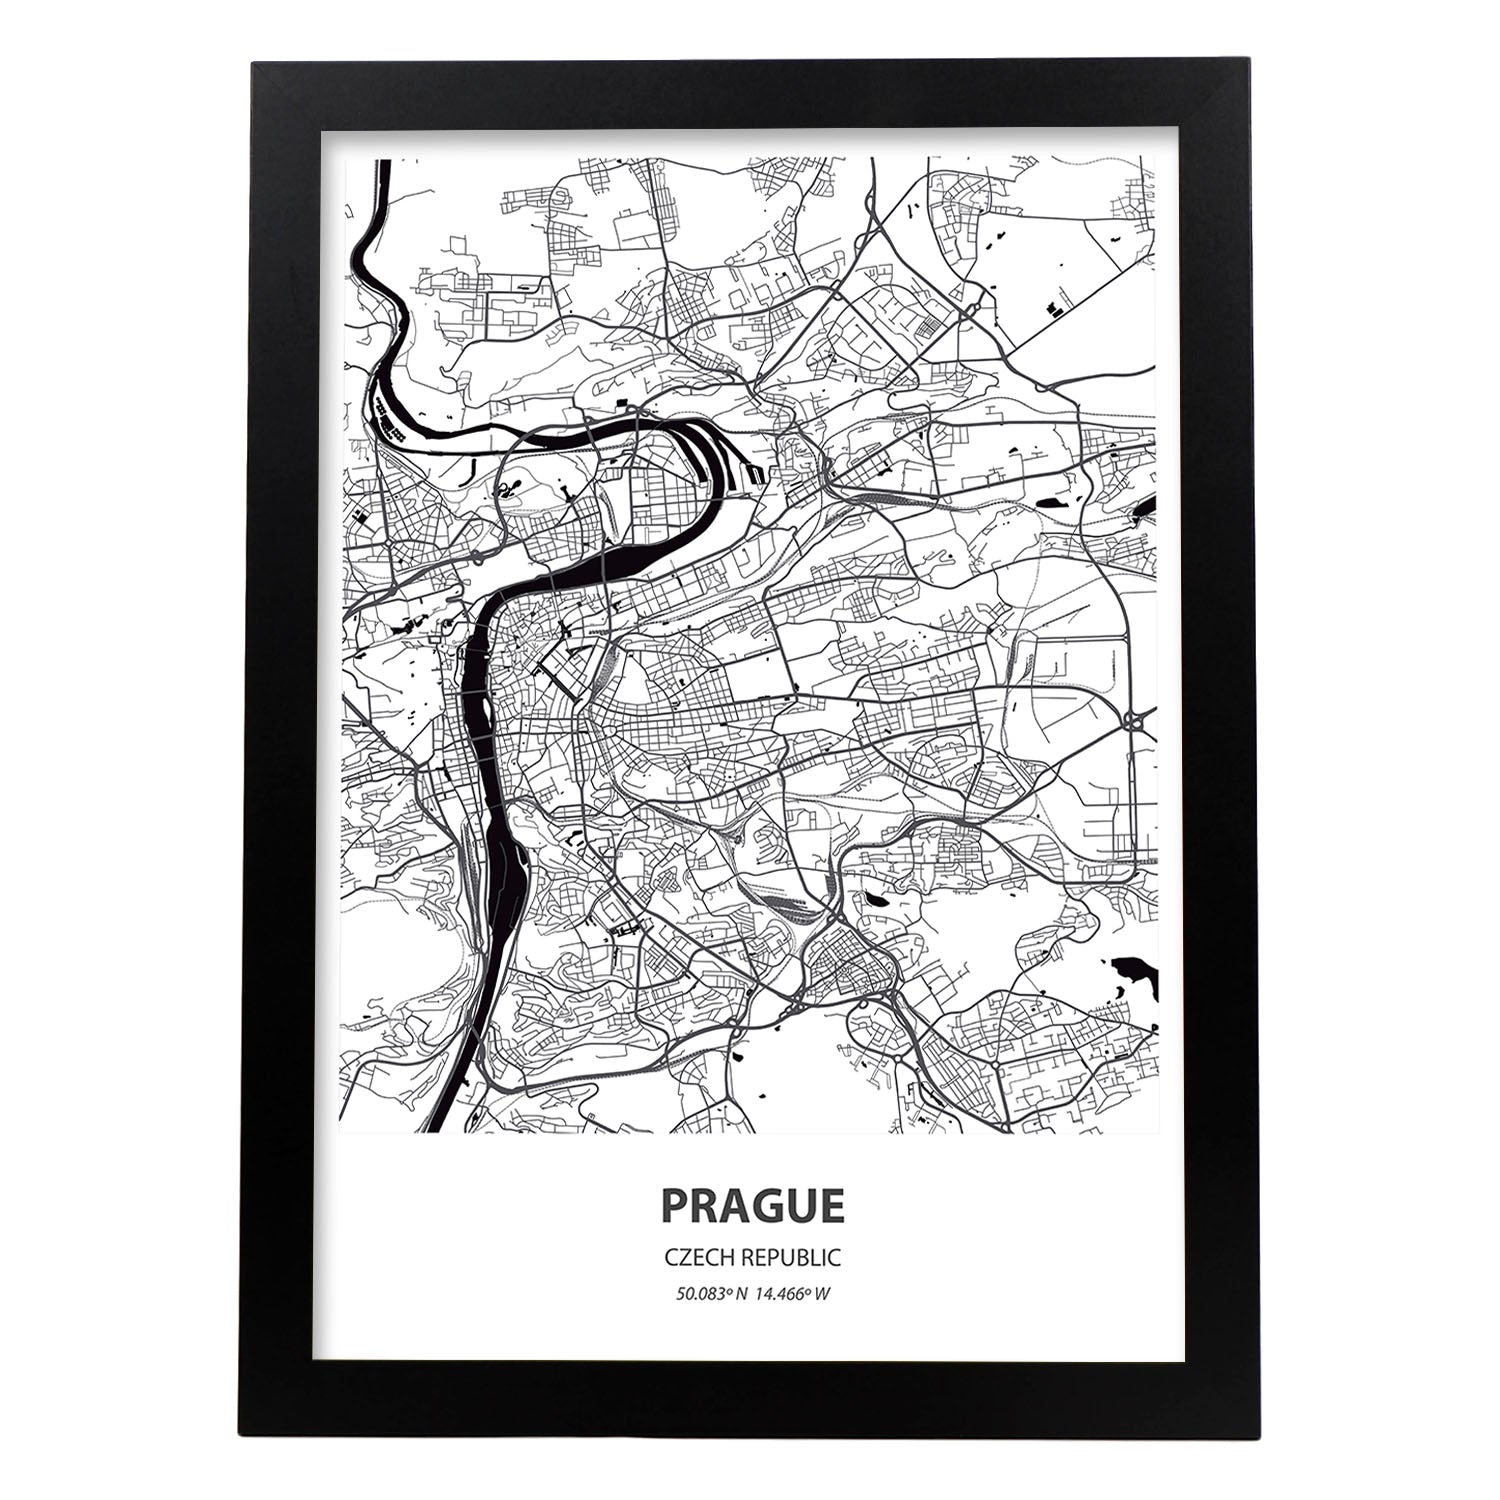 Poster con mapa de Prague - Republica Checa. Láminas de ciudades de Europa con mares y ríos en color negro.-Artwork-Nacnic-A3-Marco Negro-Nacnic Estudio SL